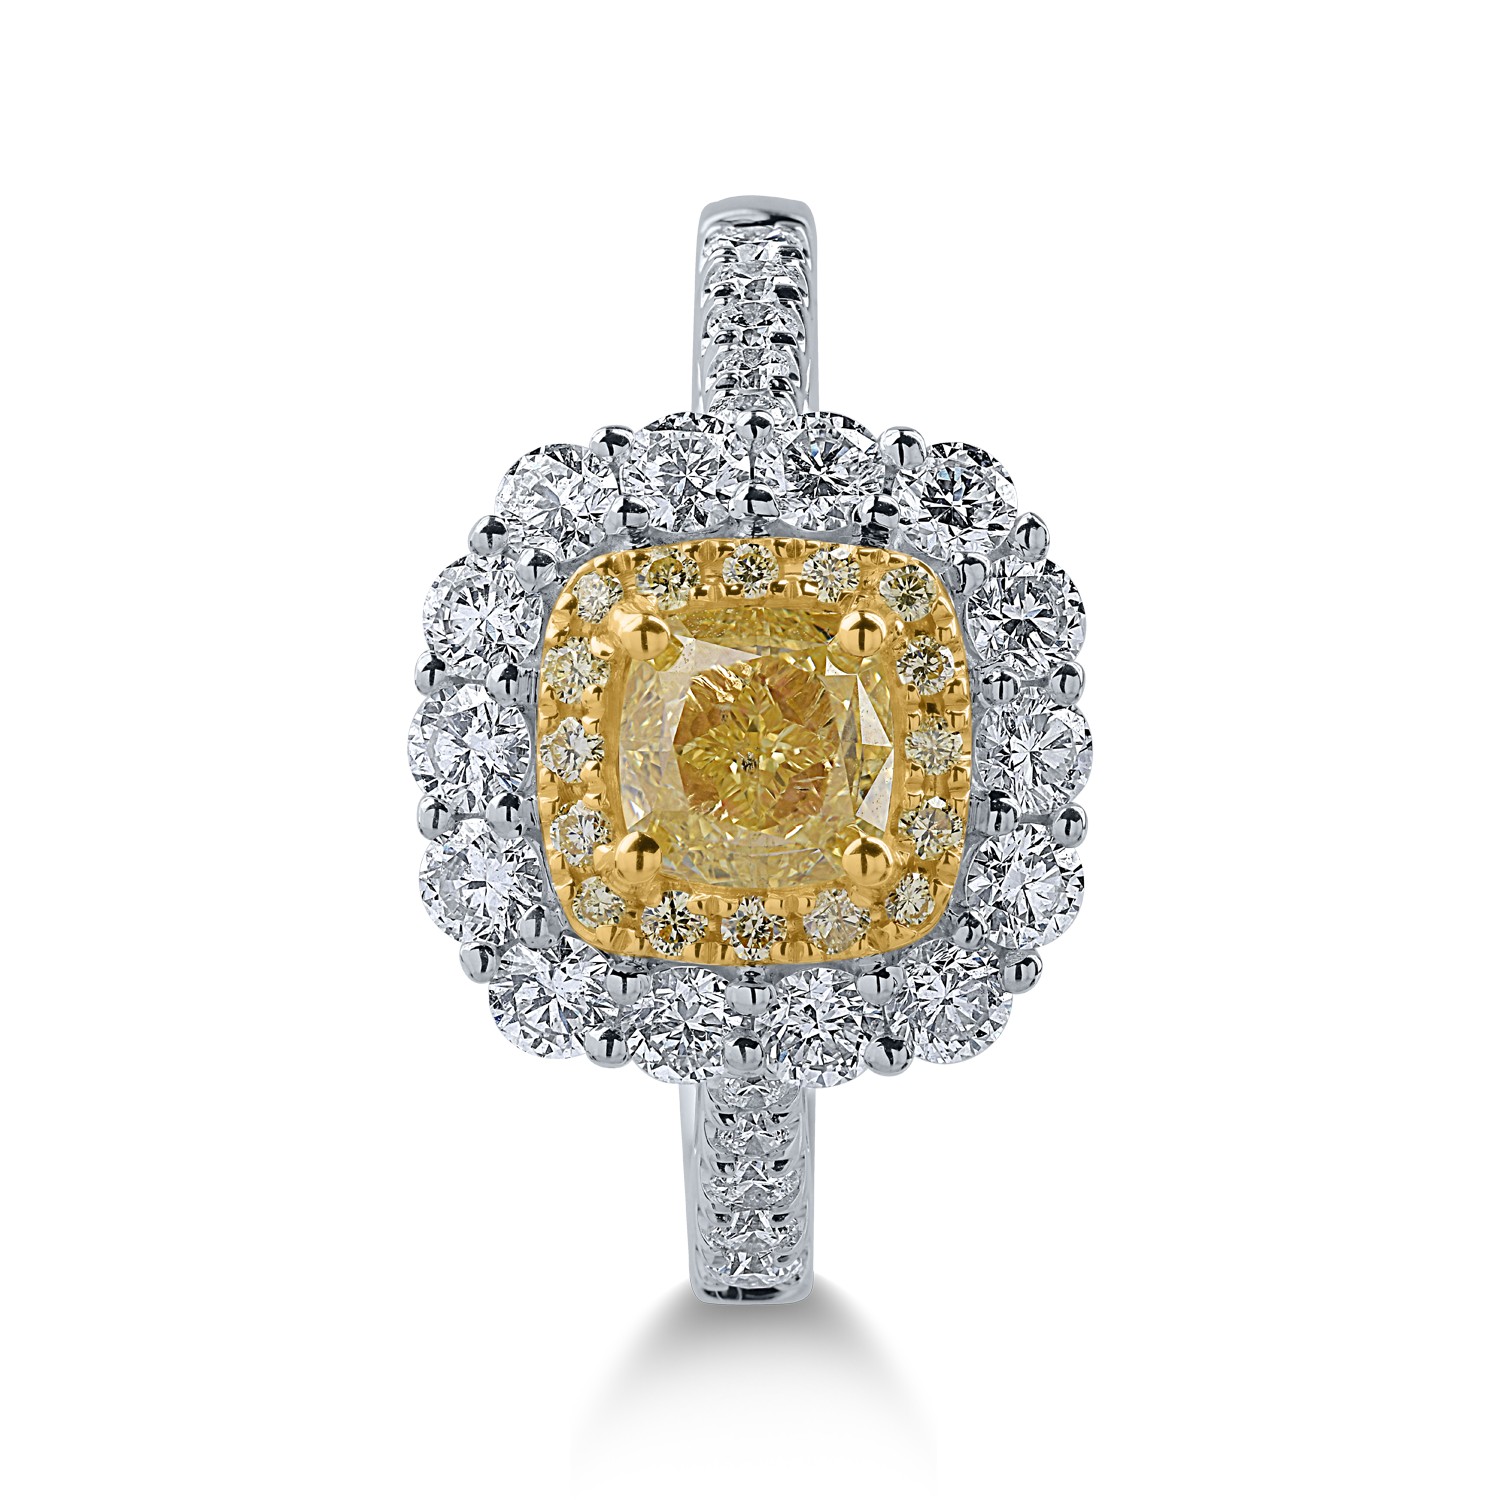 Pierścionek z biało-żółtego złota z żółtymi diamentami o masie 1.12ct i przezroczystymi diamentami o masie 0.88ct